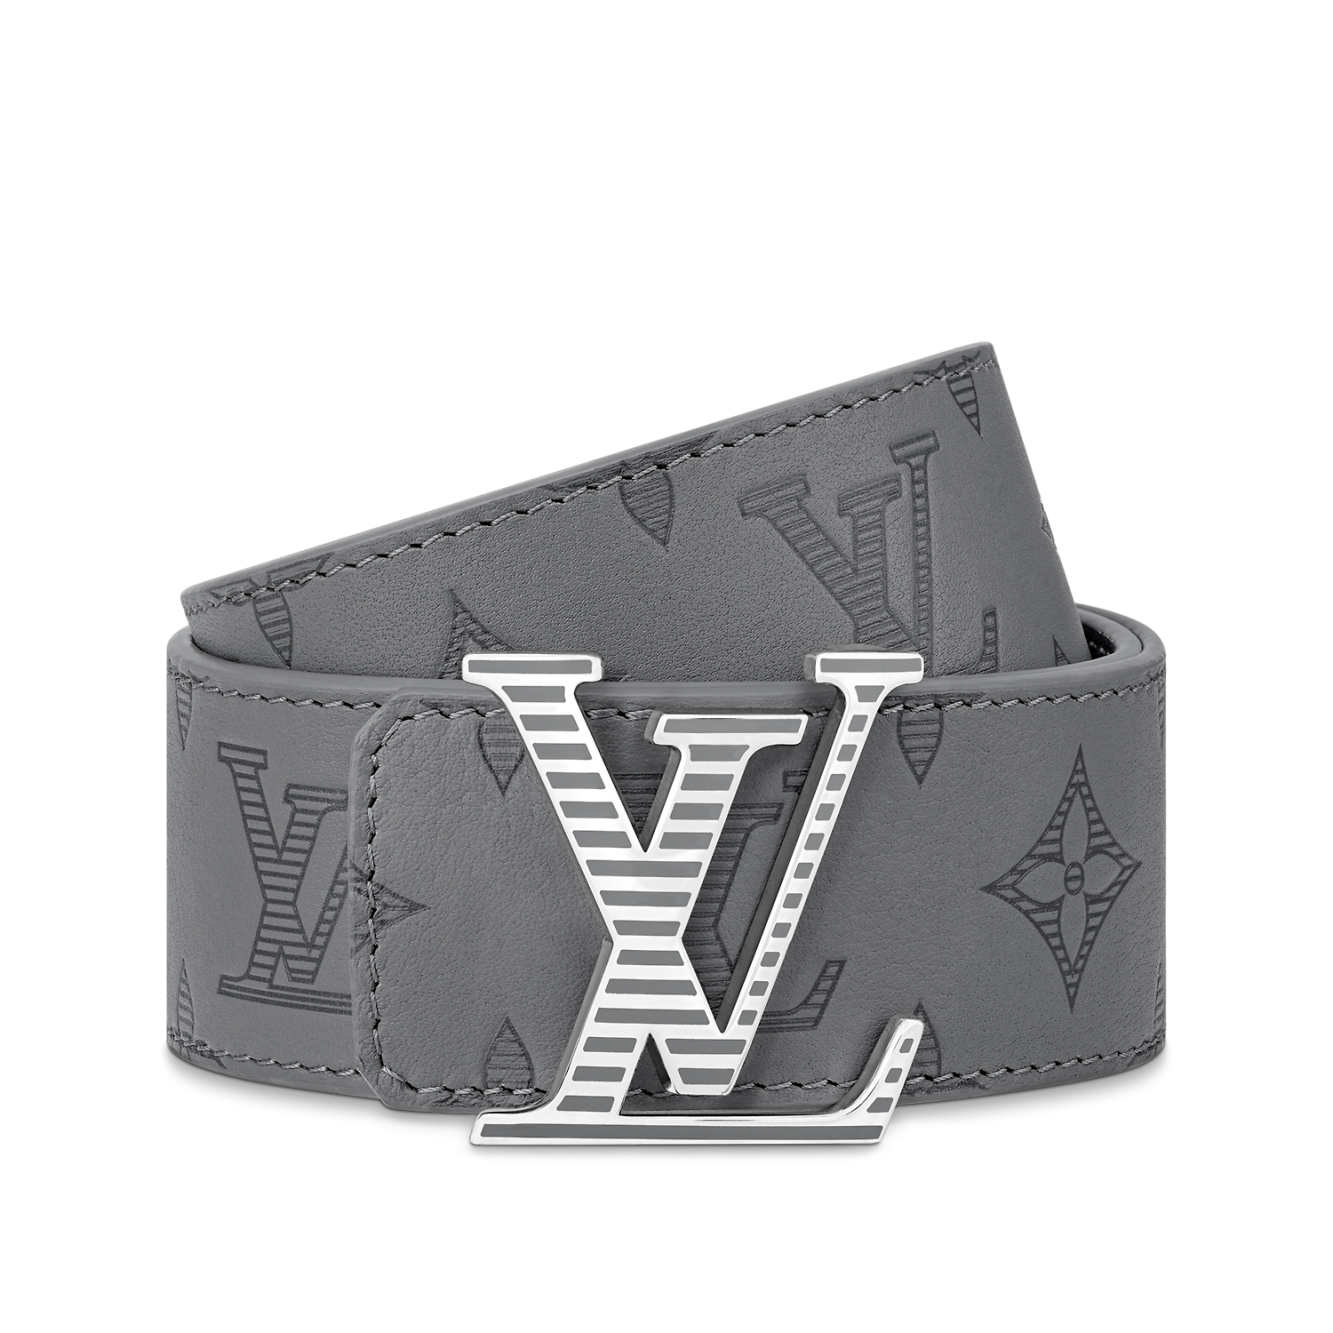 Louis Vuitton LV Shadow 40mm Reversible Belt Black Leather. Size 110 cm